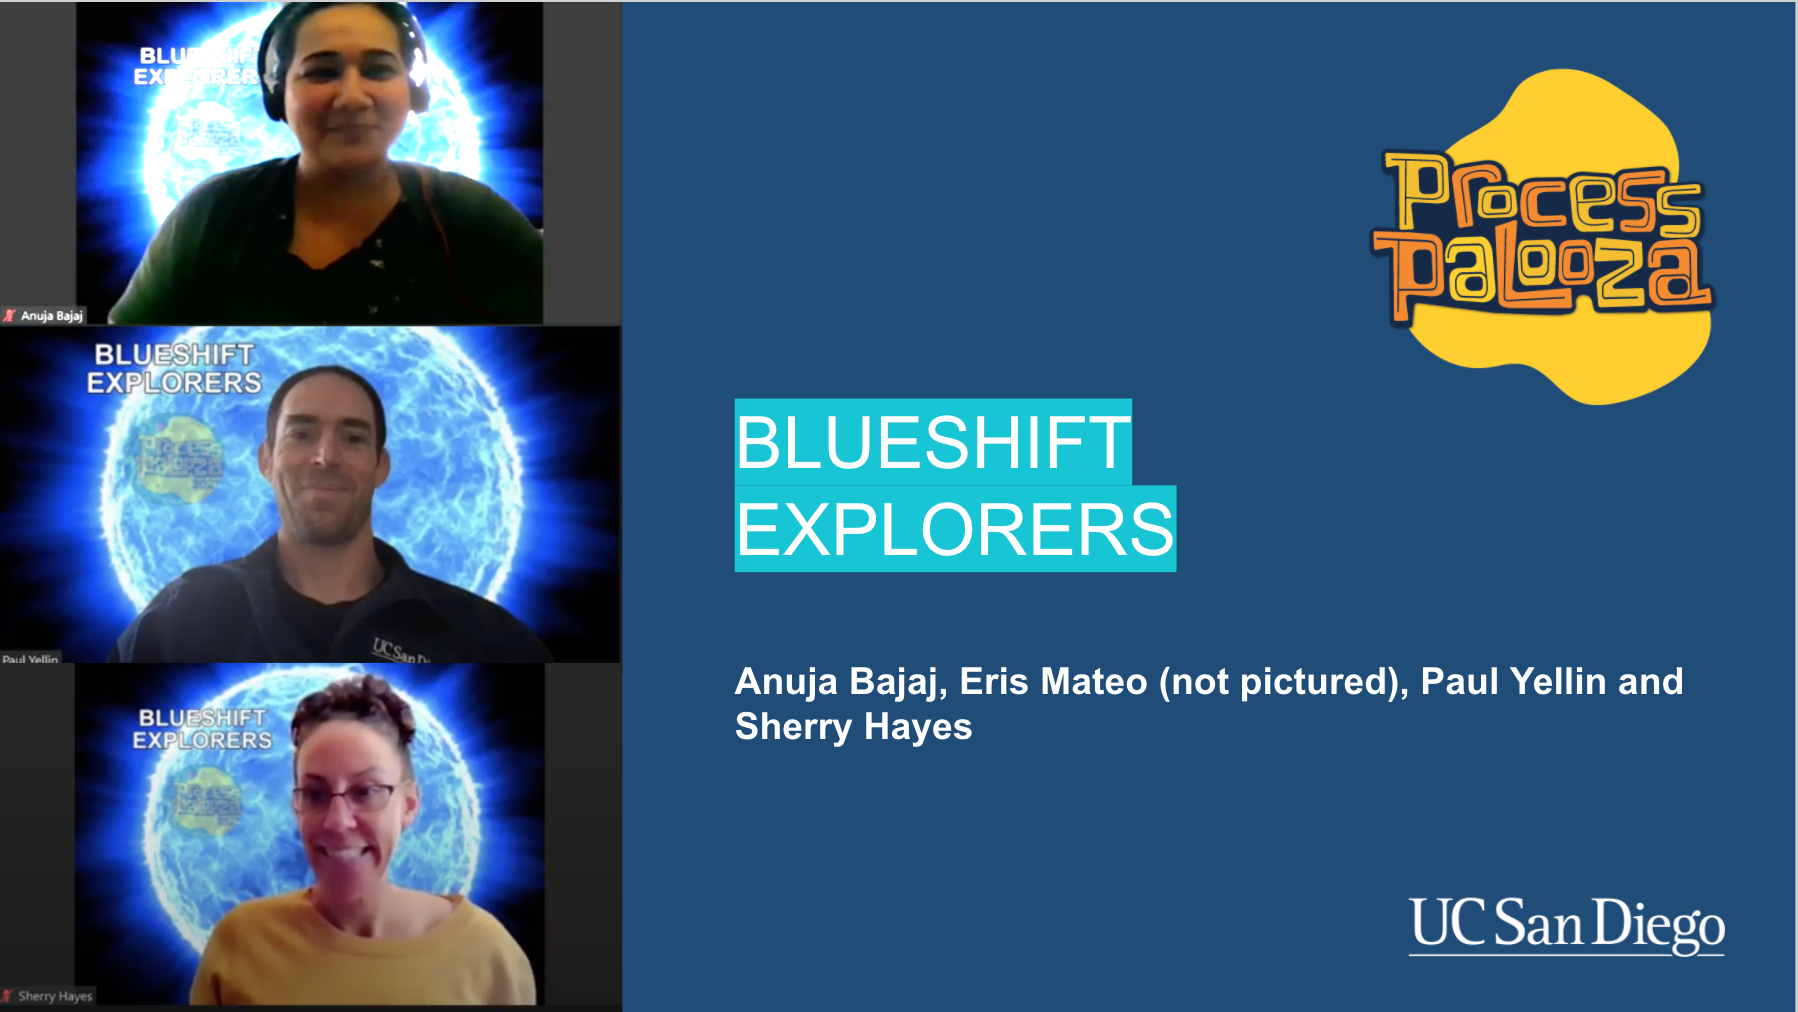 blueshift explorers group